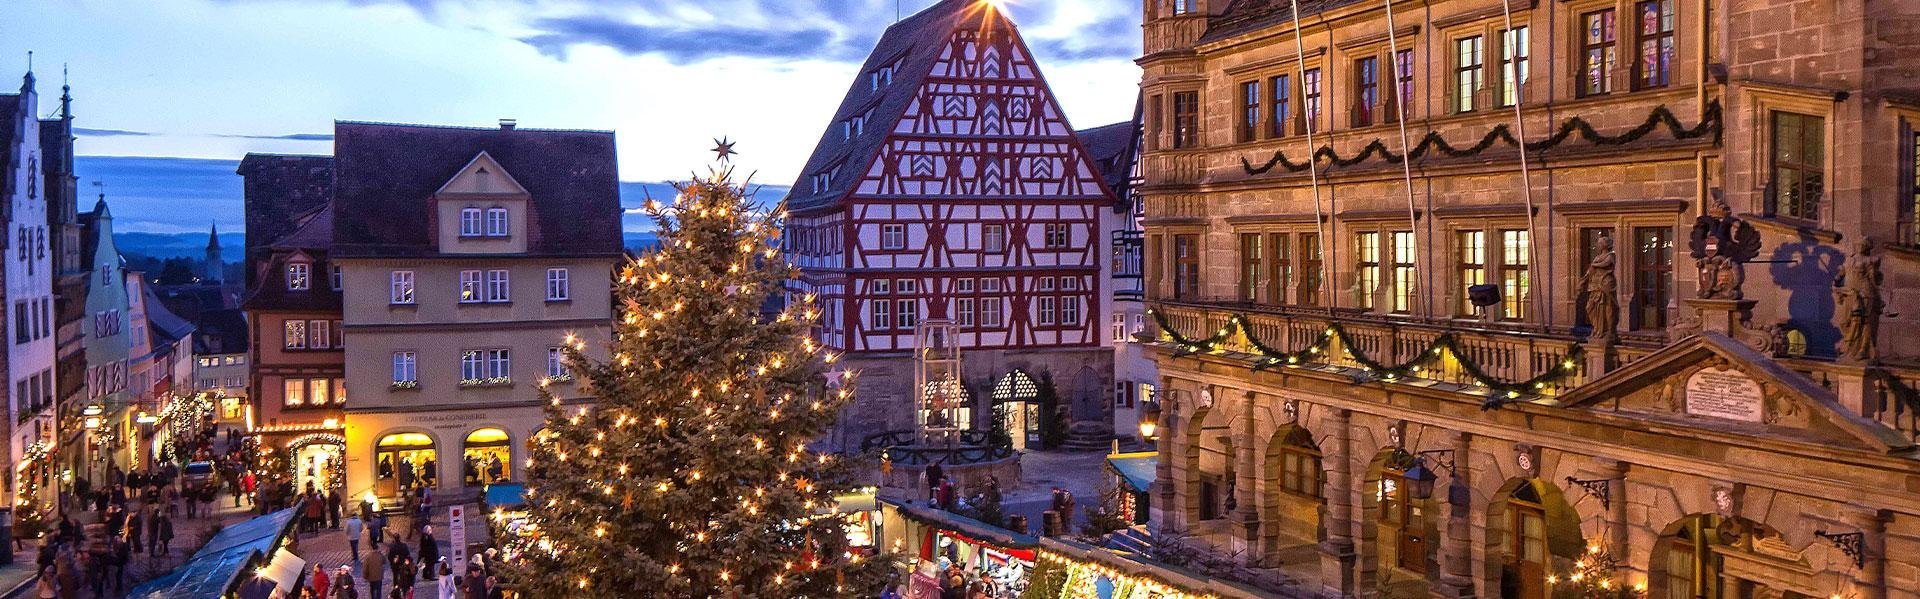 Kerstmarkt in Rothenburg ob der Tauber, Duitsland